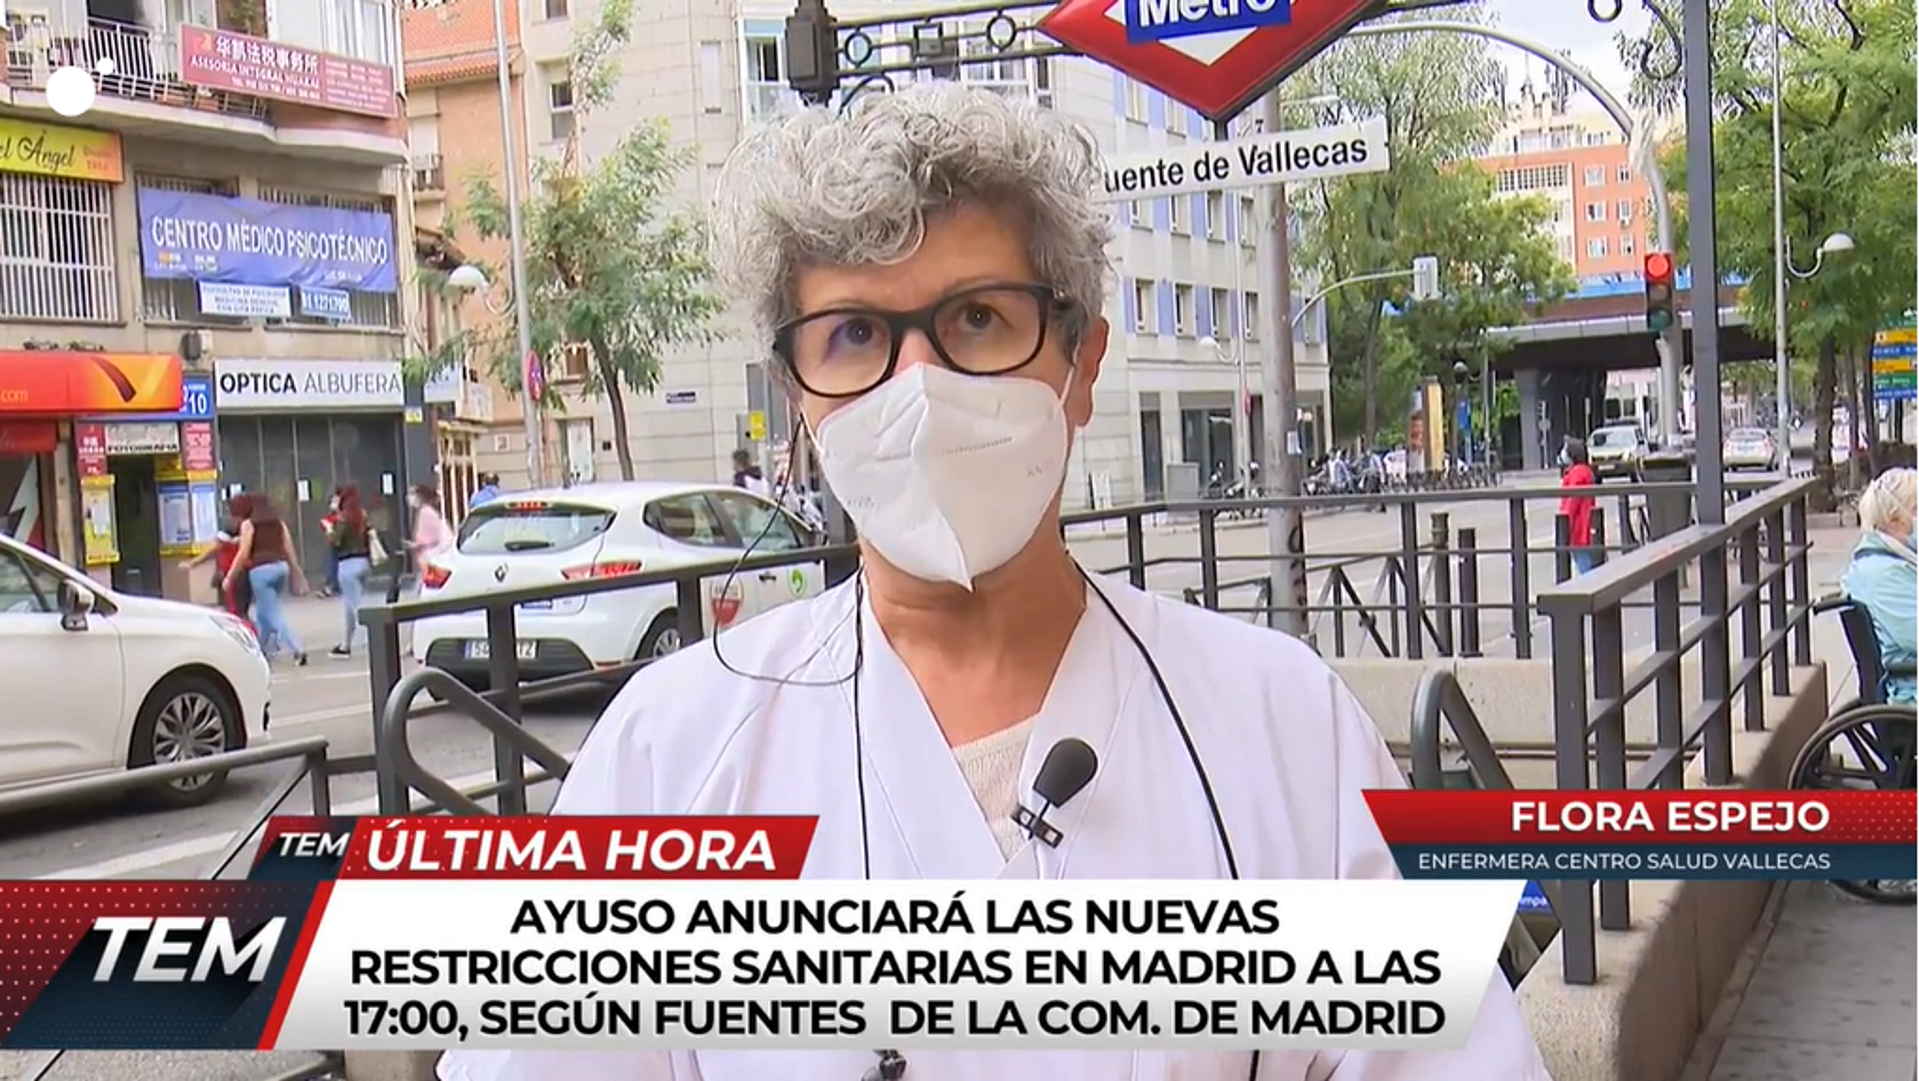 Una enfermera de Madrid, desesperada: "La situación es absolutamente caótica"